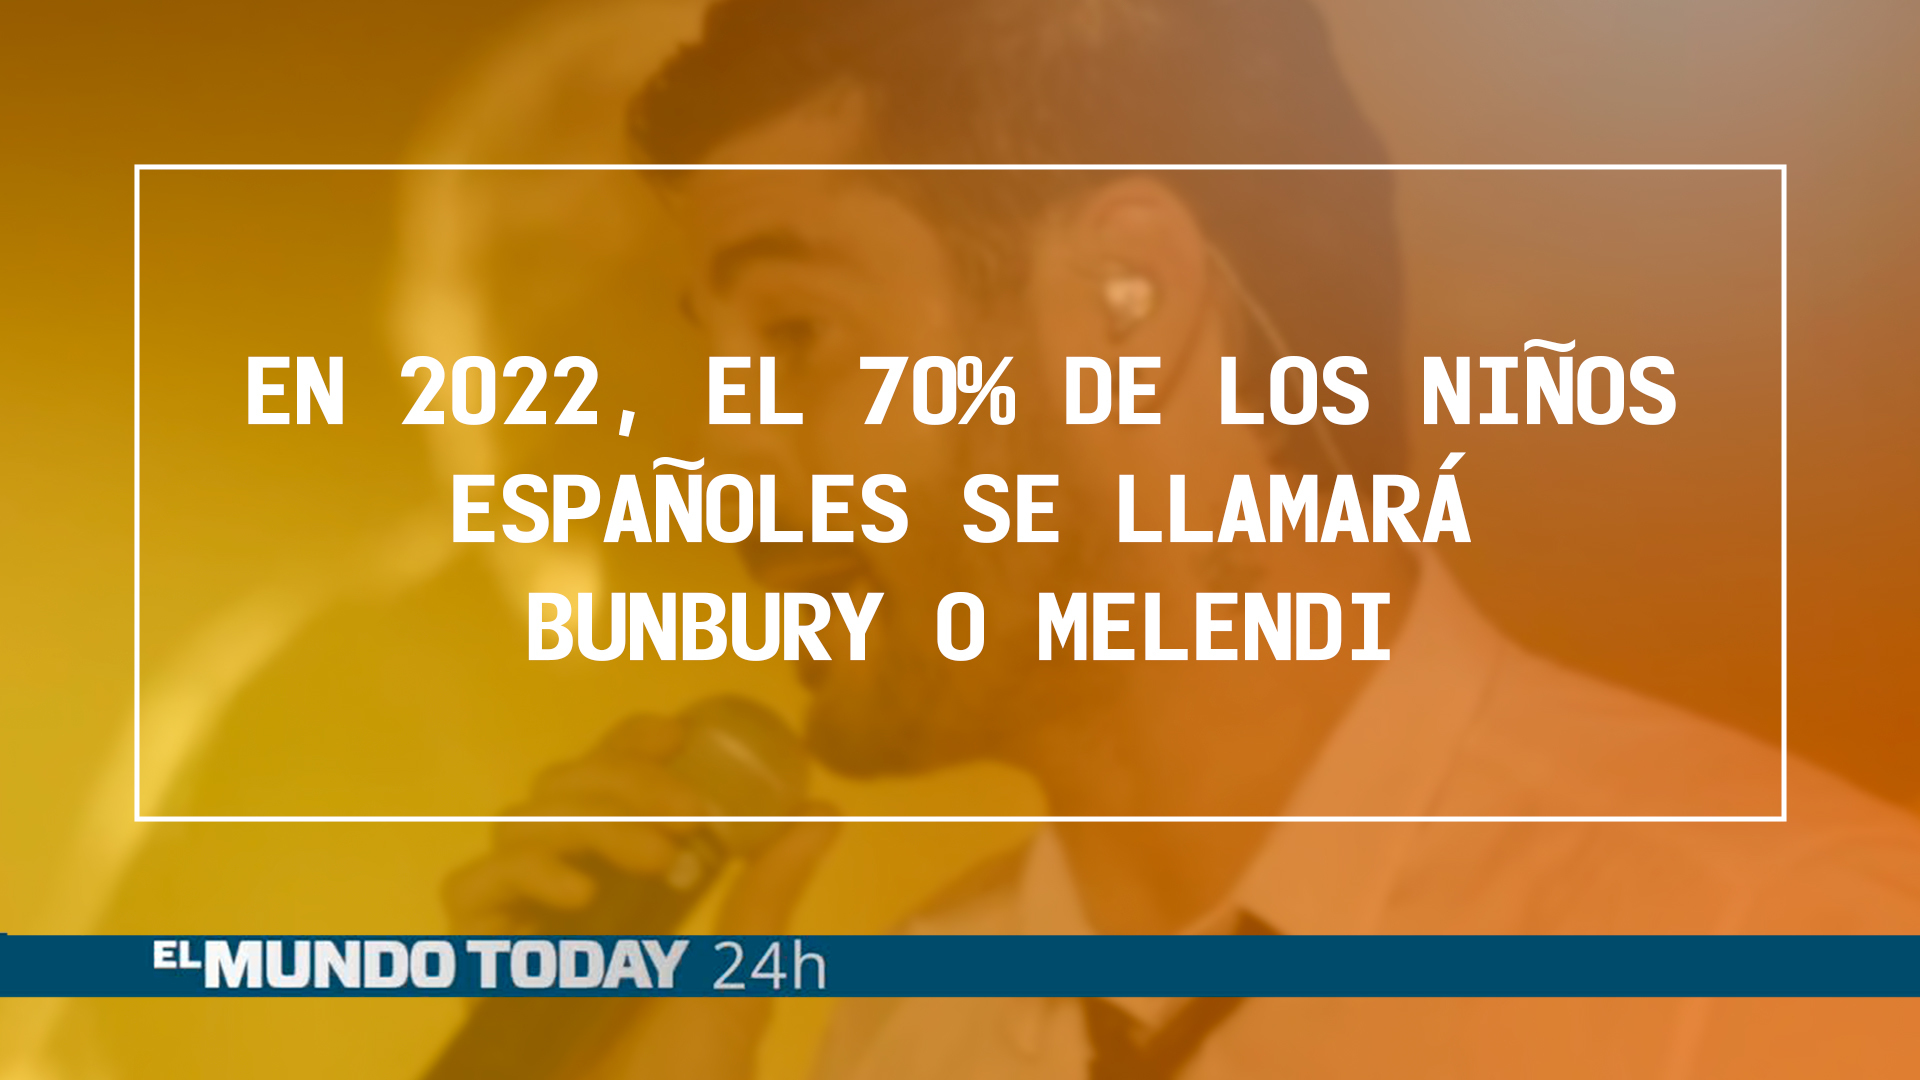 Temporada 1 Noticias 'El Mundo Today': En 2022 los niños españoles se llamaran Bunbury o Melendi